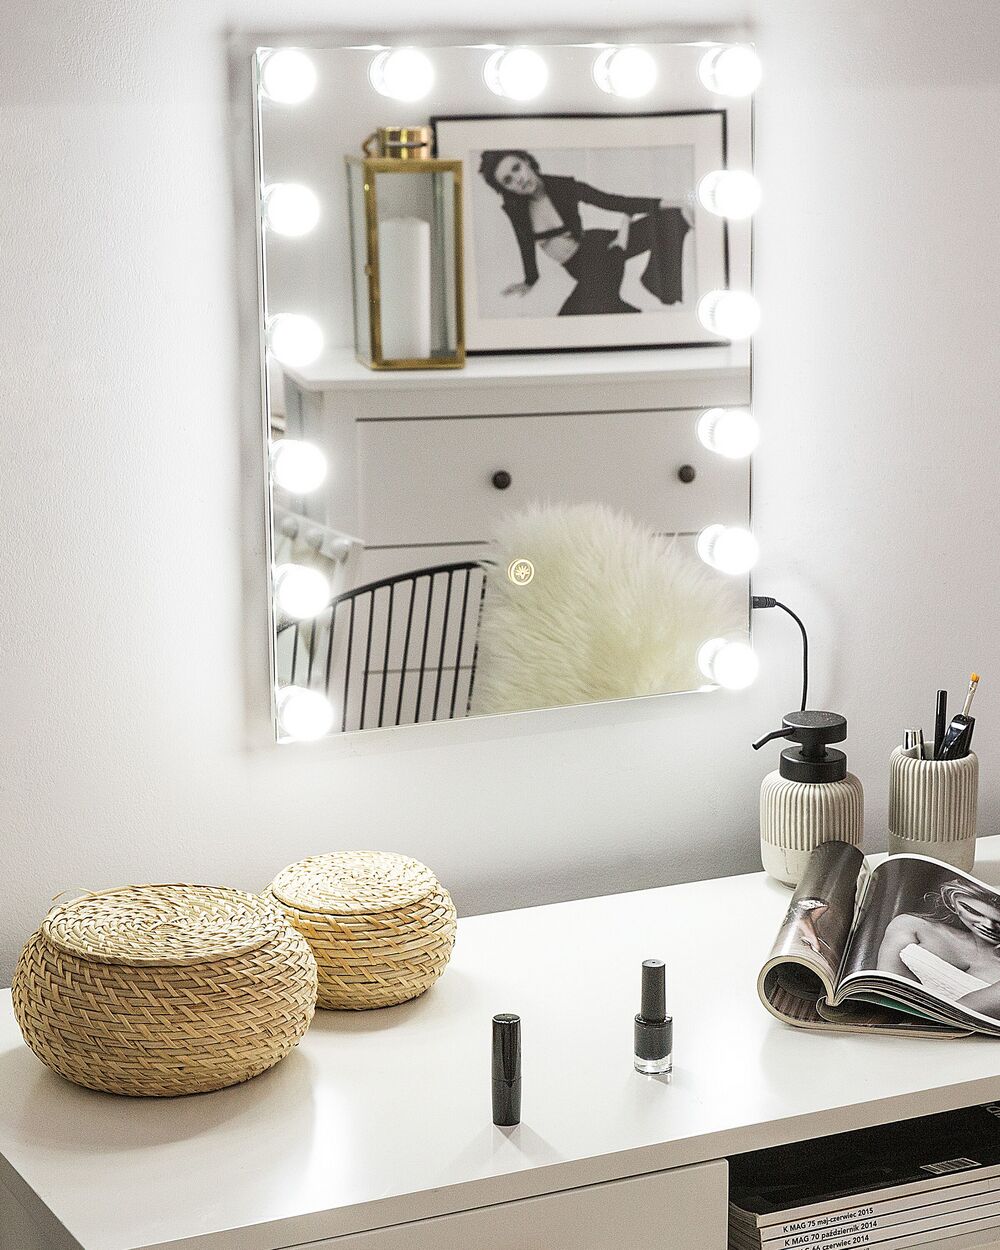 Espejo de baño ATIU 60x80 cm con marco metálico y LED